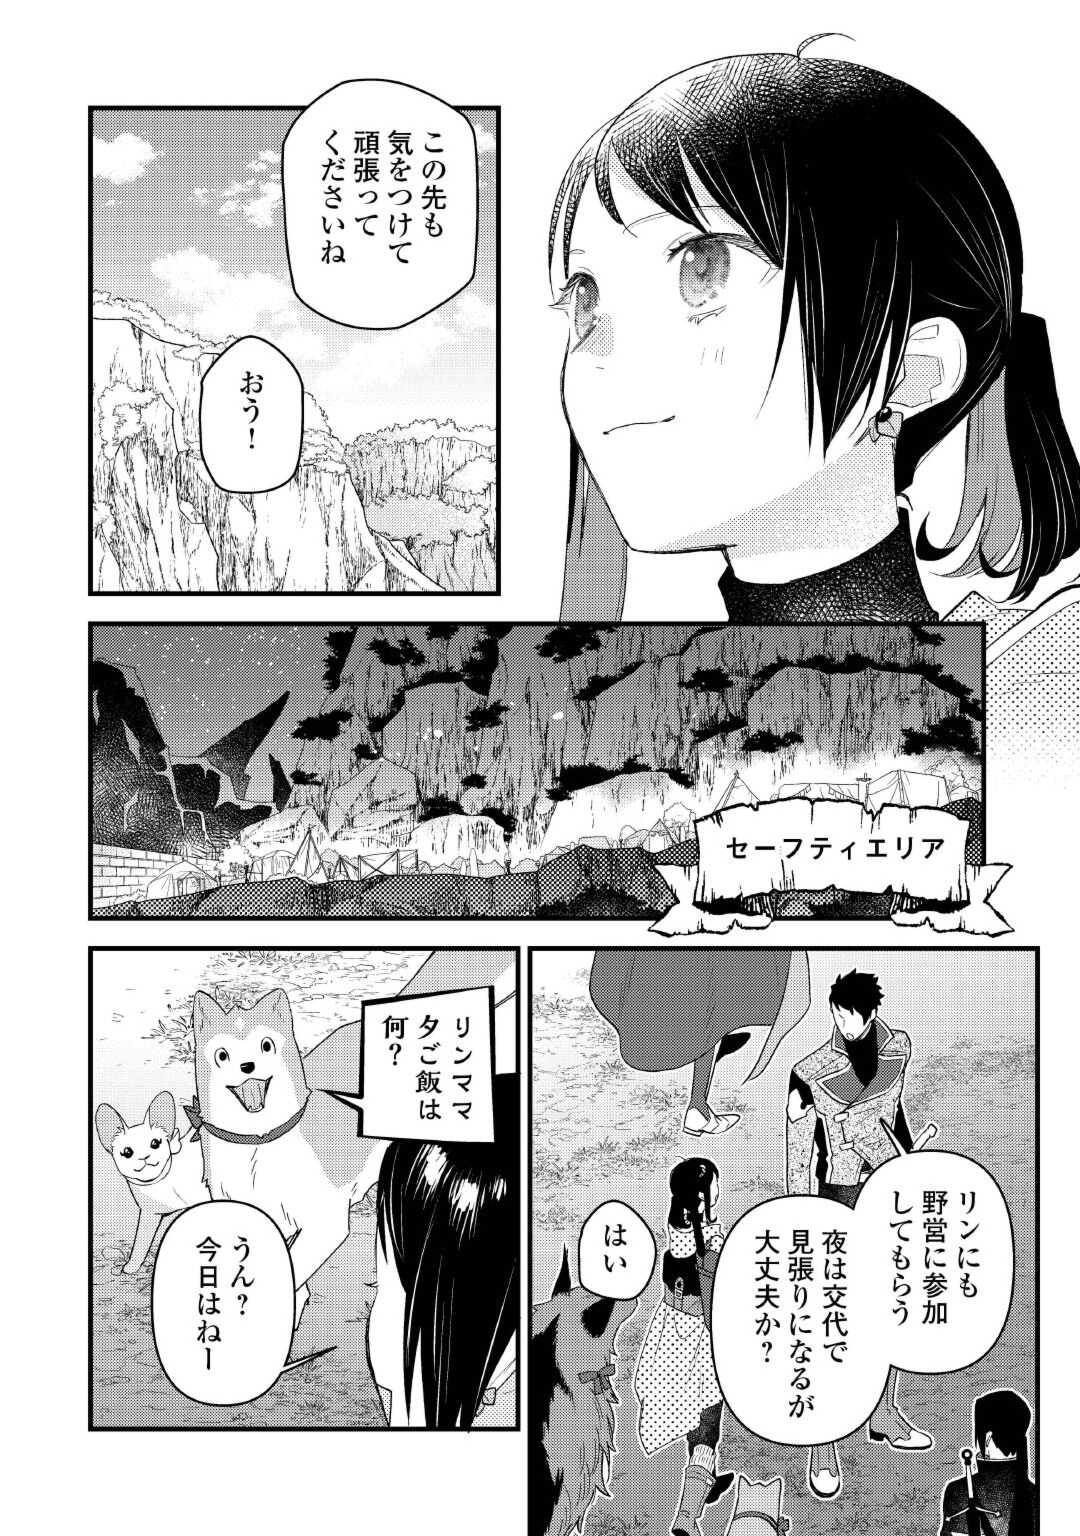 Tenisaki wa Kusushi ga Sukunai Sekai Deshita - Chapter 28 - Page 10